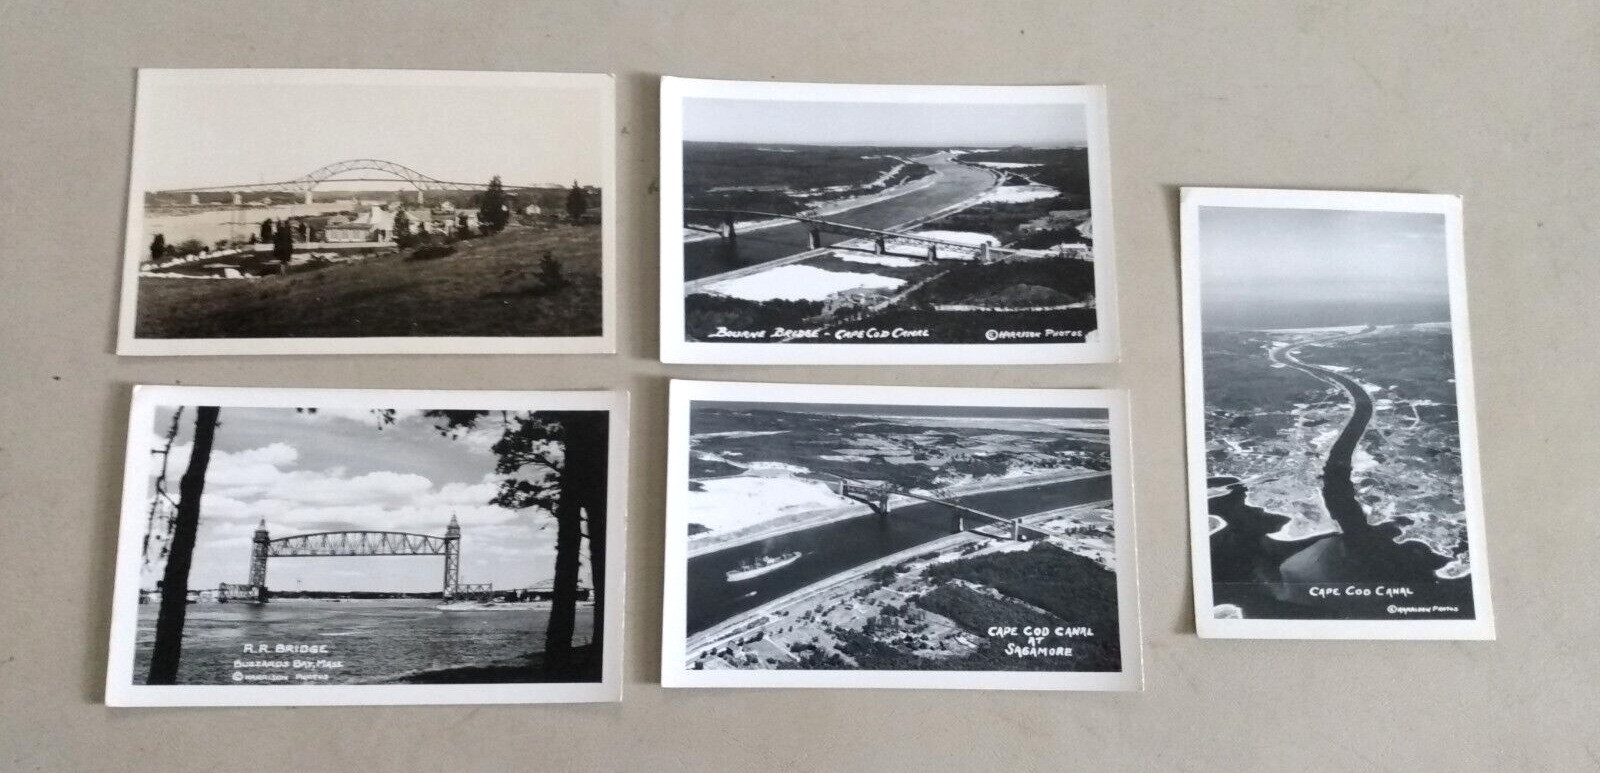 5 - 1940s/1950s RPPC Postcards CAPE COD CANAL Sagamore, Bourne, Railroad Bridges